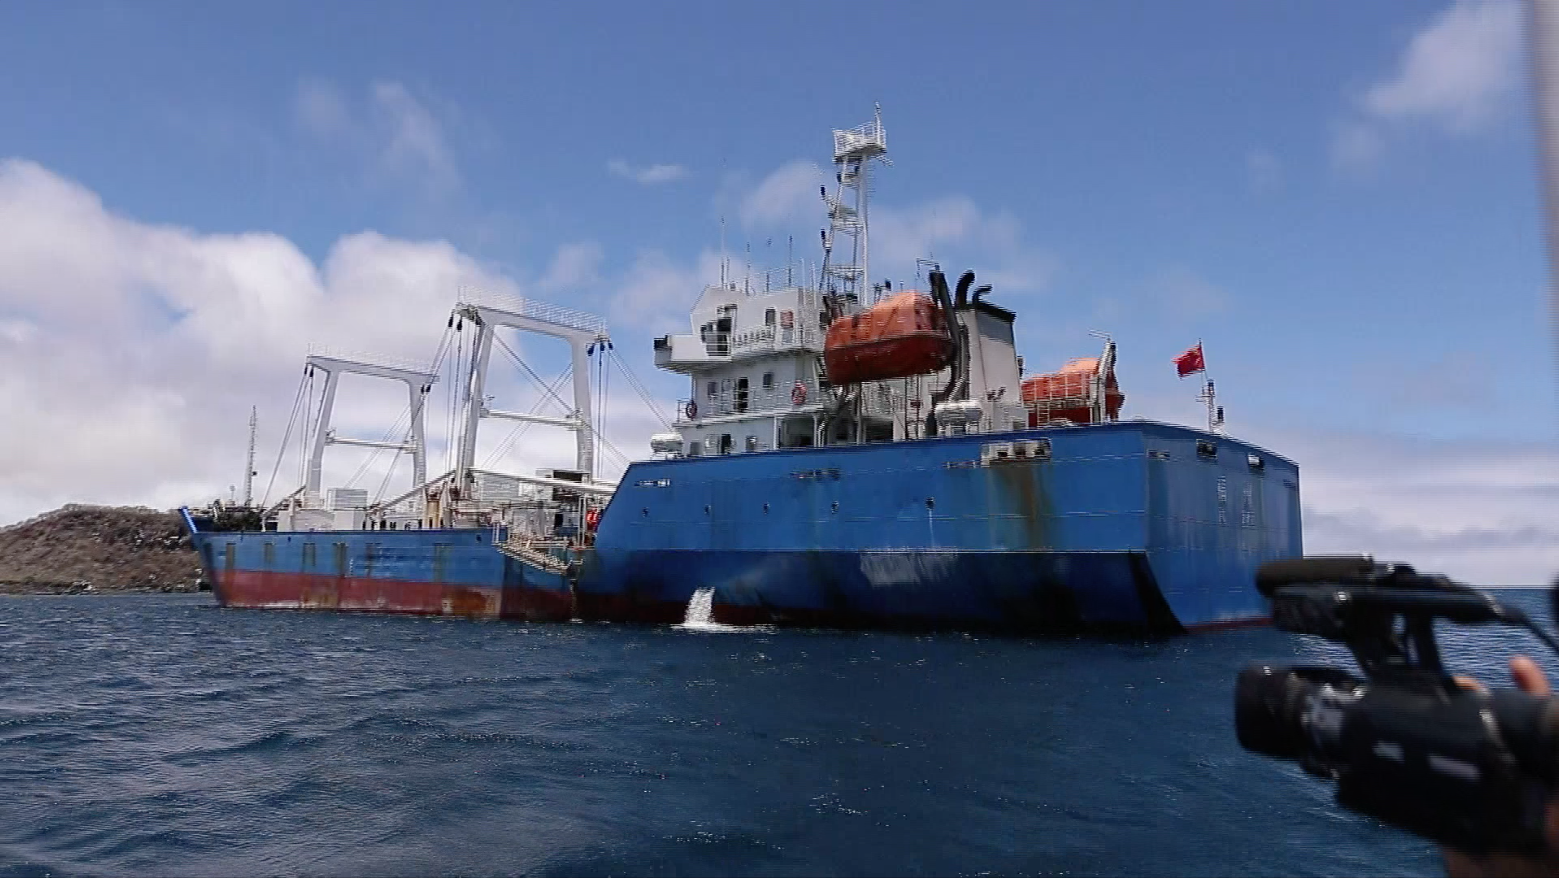 Hasta 4 años de cárcel para tripulación de barco chino apresado en Galápagos